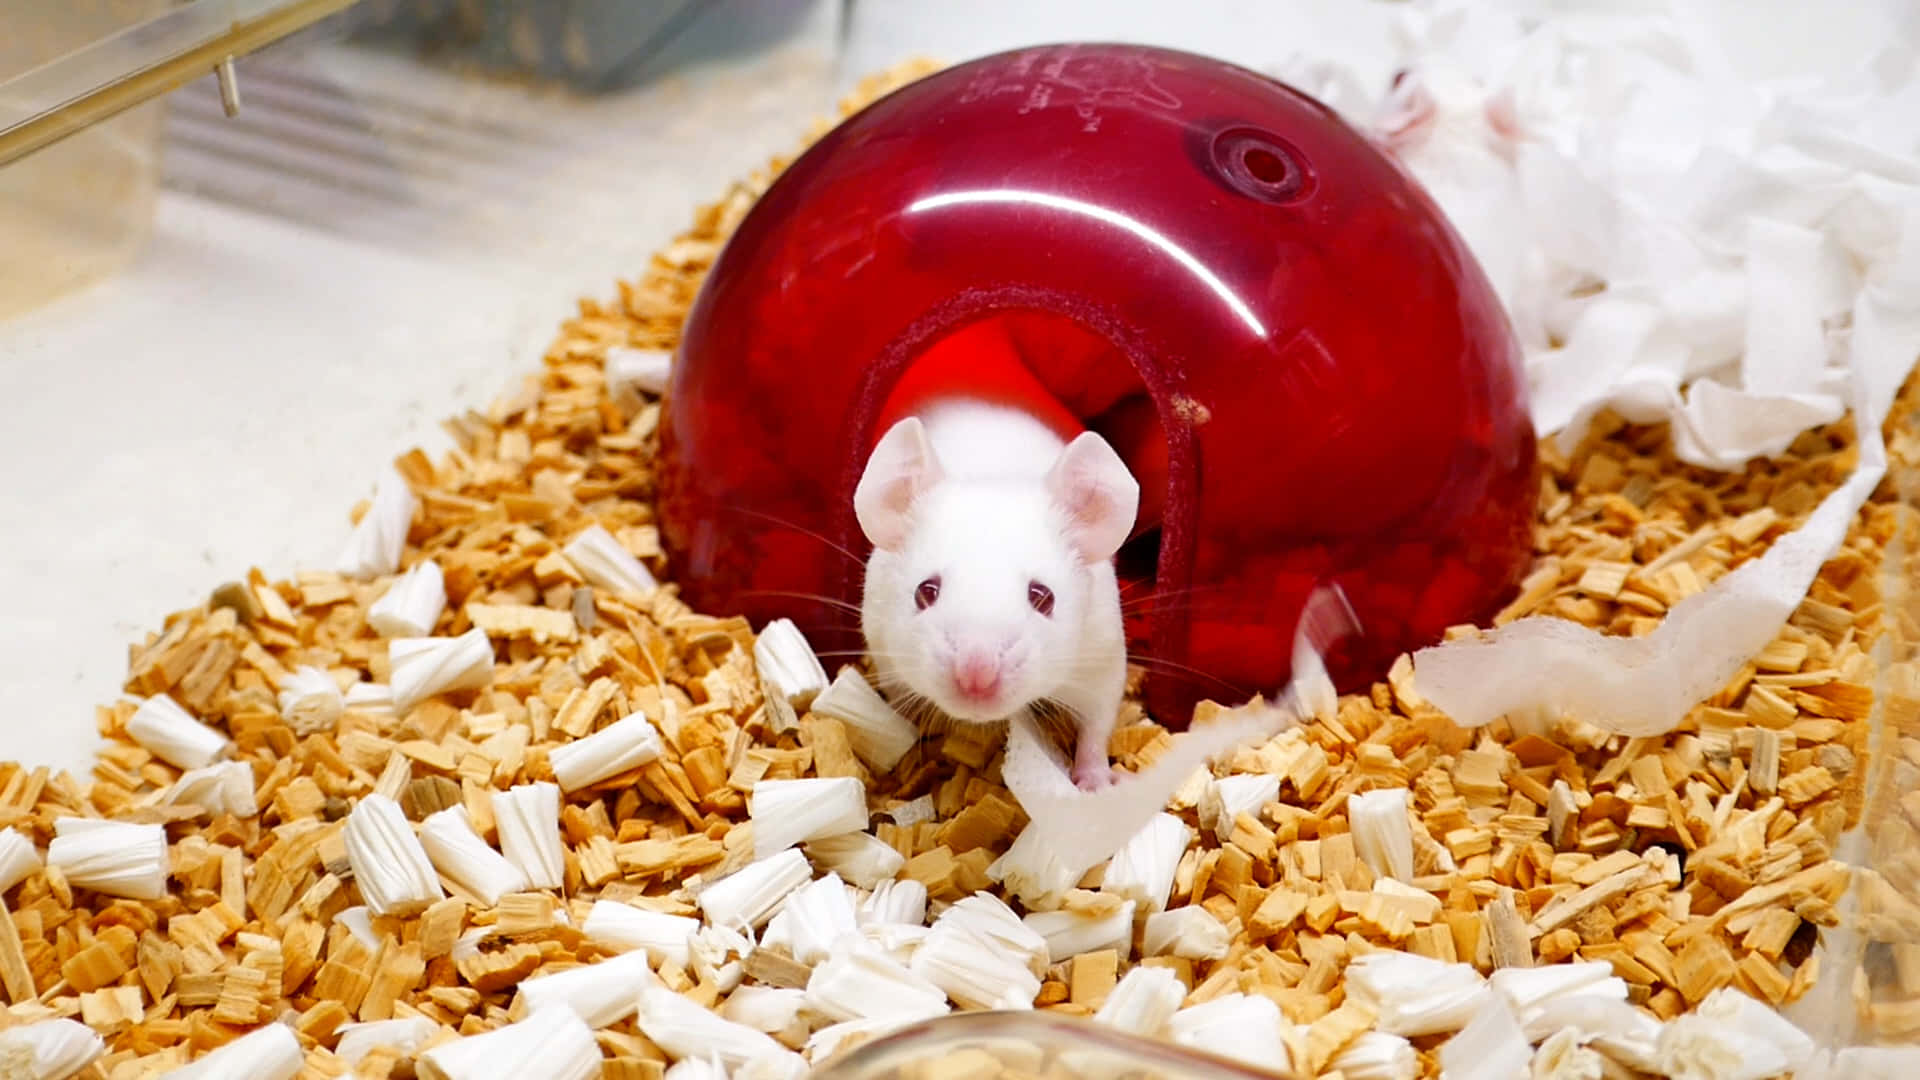 Eineweiße Ratte Ist In Einer Roten Plastikkugel.